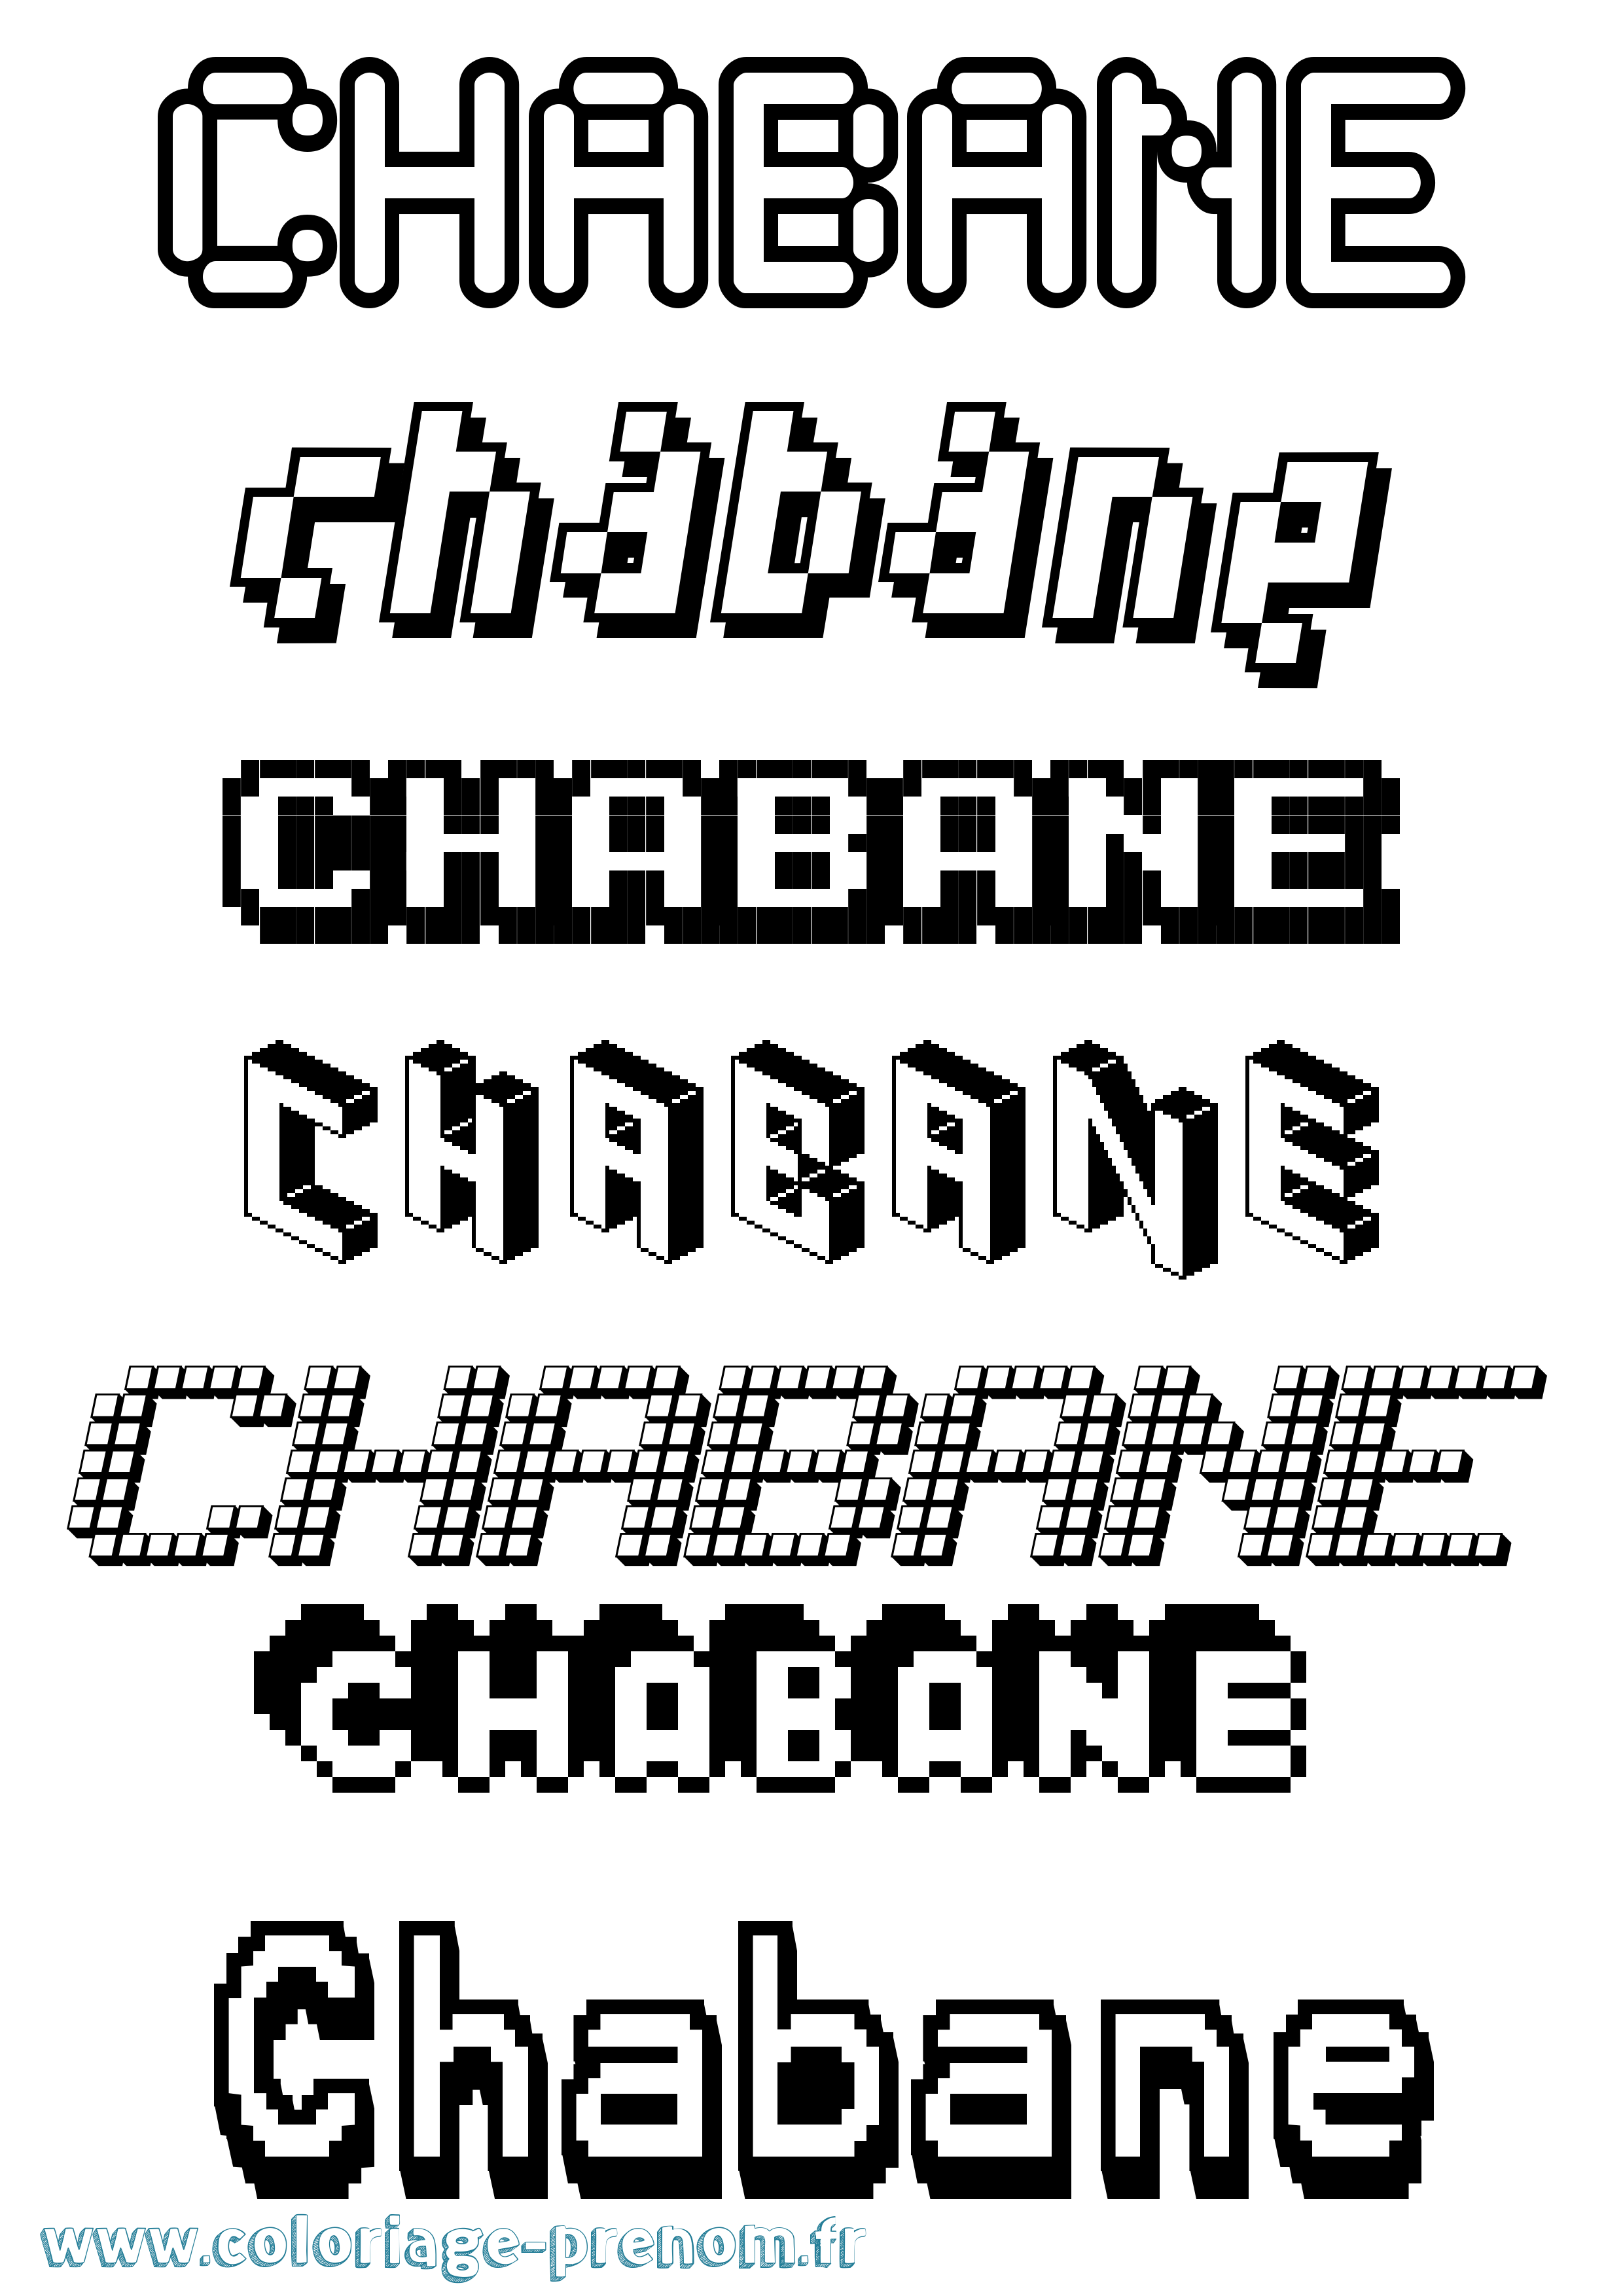 Coloriage prénom Chabane Pixel